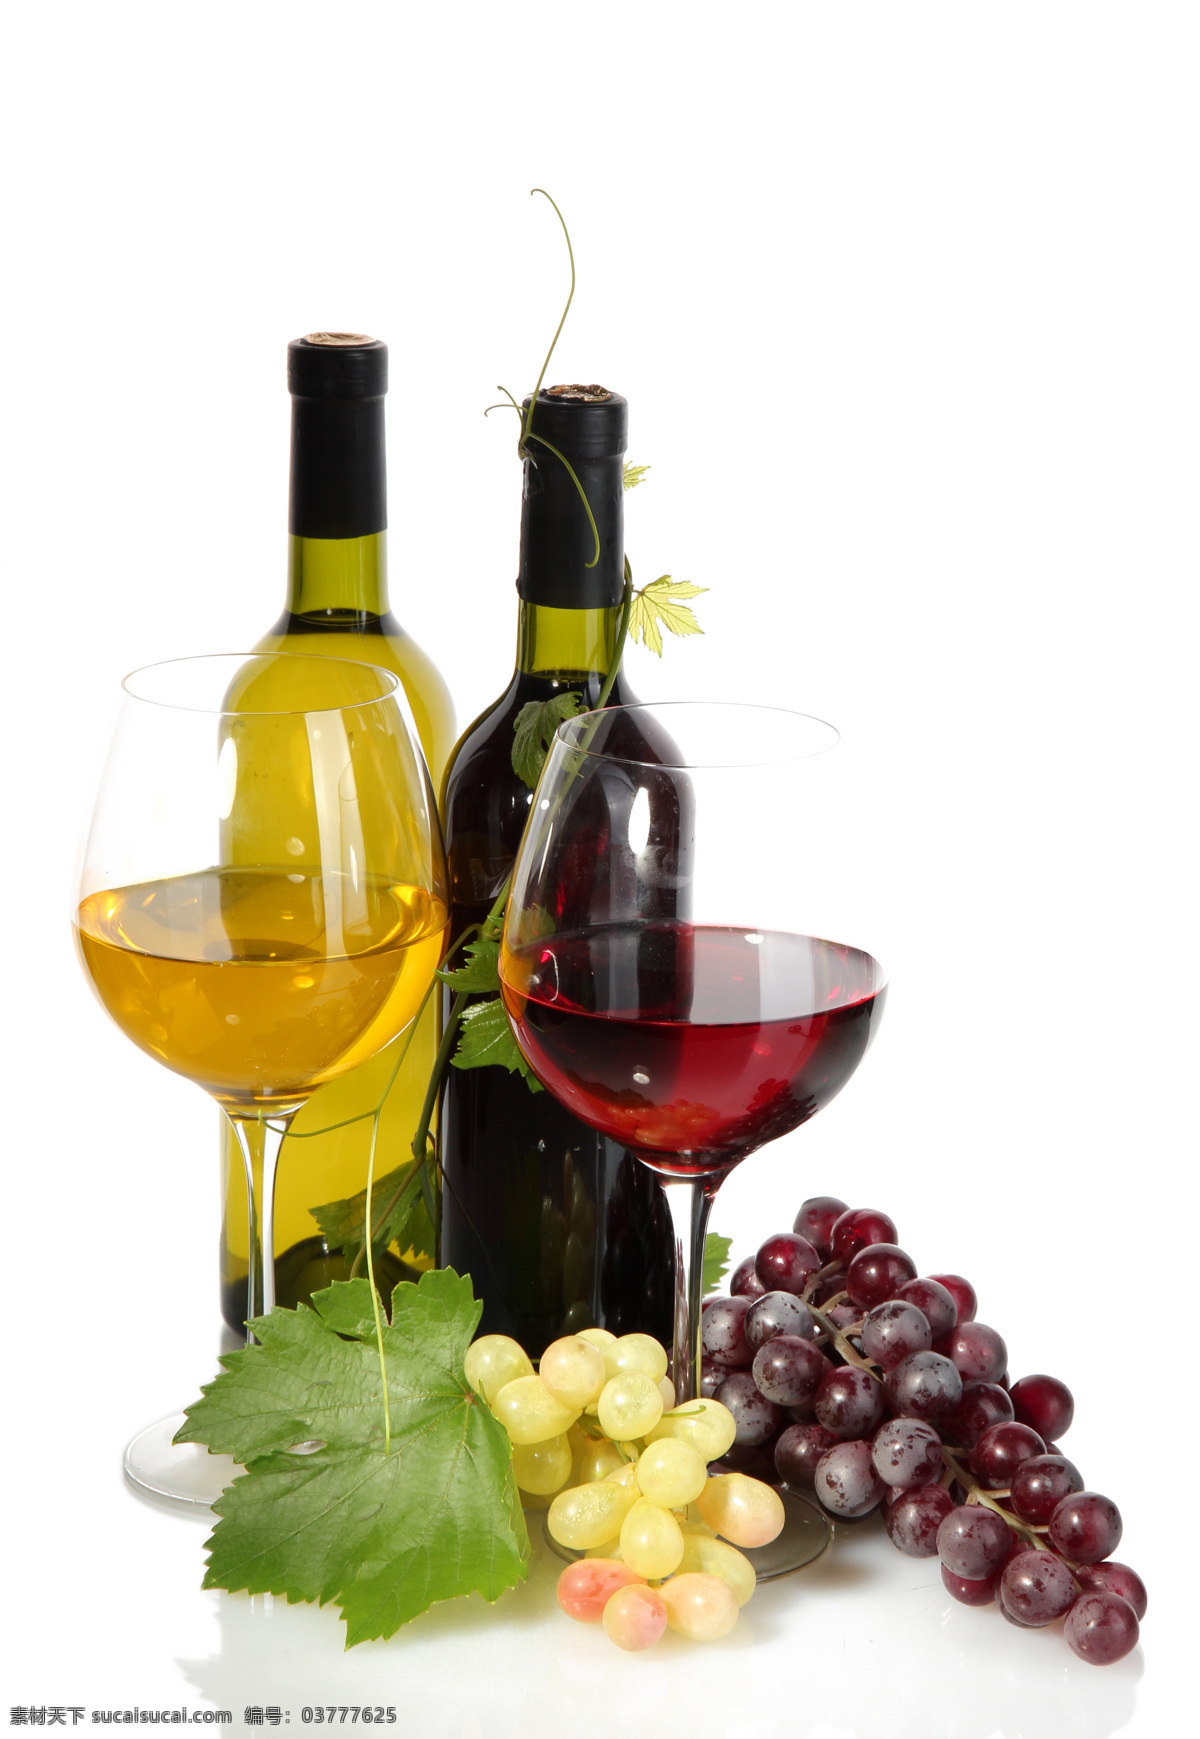 葡萄酒 新鲜 葡萄 酒水饮料 新鲜水果 绿叶 高脚杯 休闲饮品 餐饮美食 白色